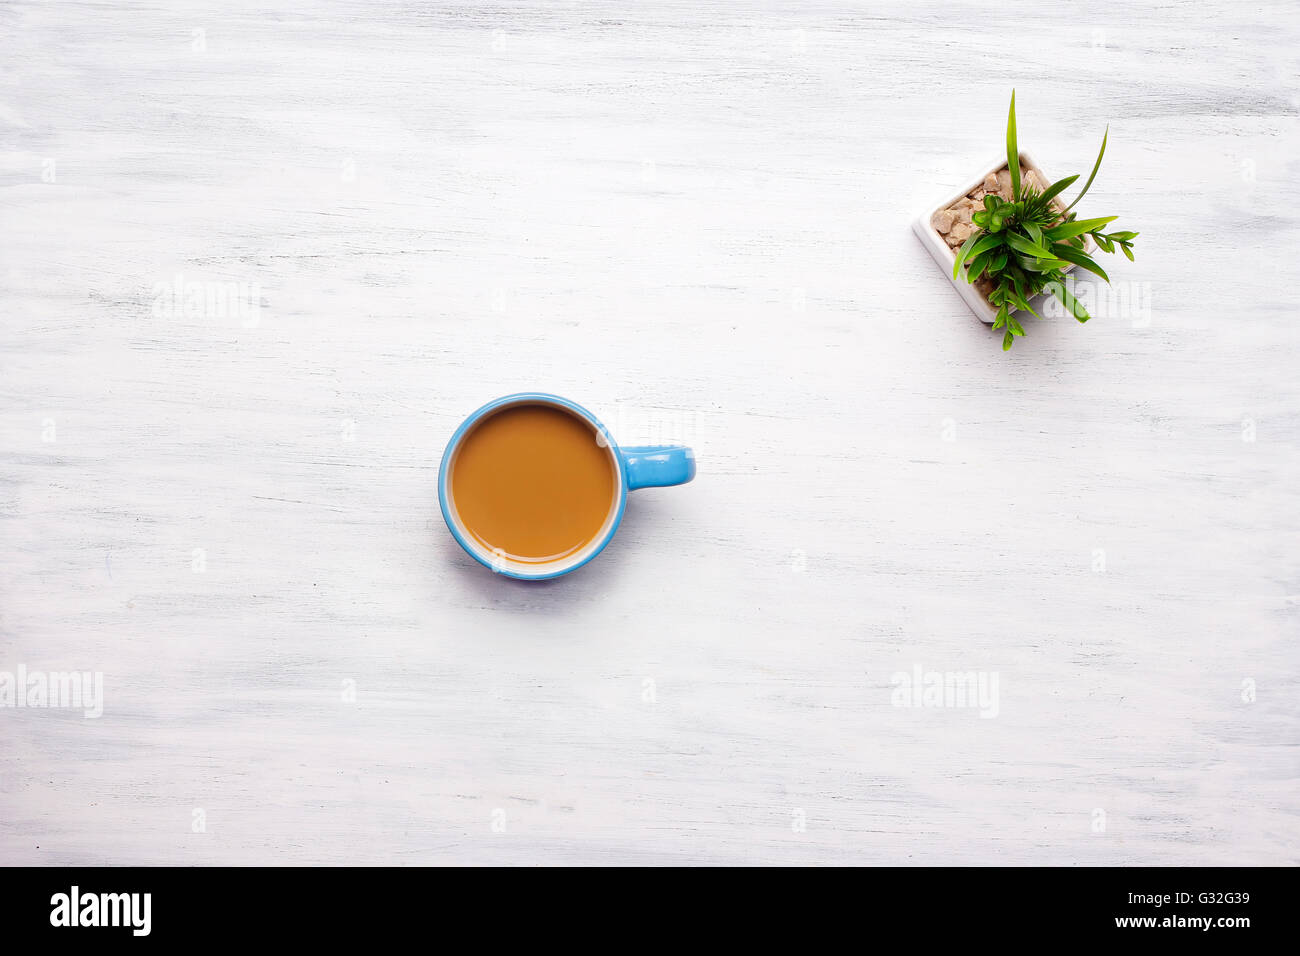 Vue de dessus de tasse de café sur une table en bois blanc. Pause au travail, style de concept. Banque D'Images